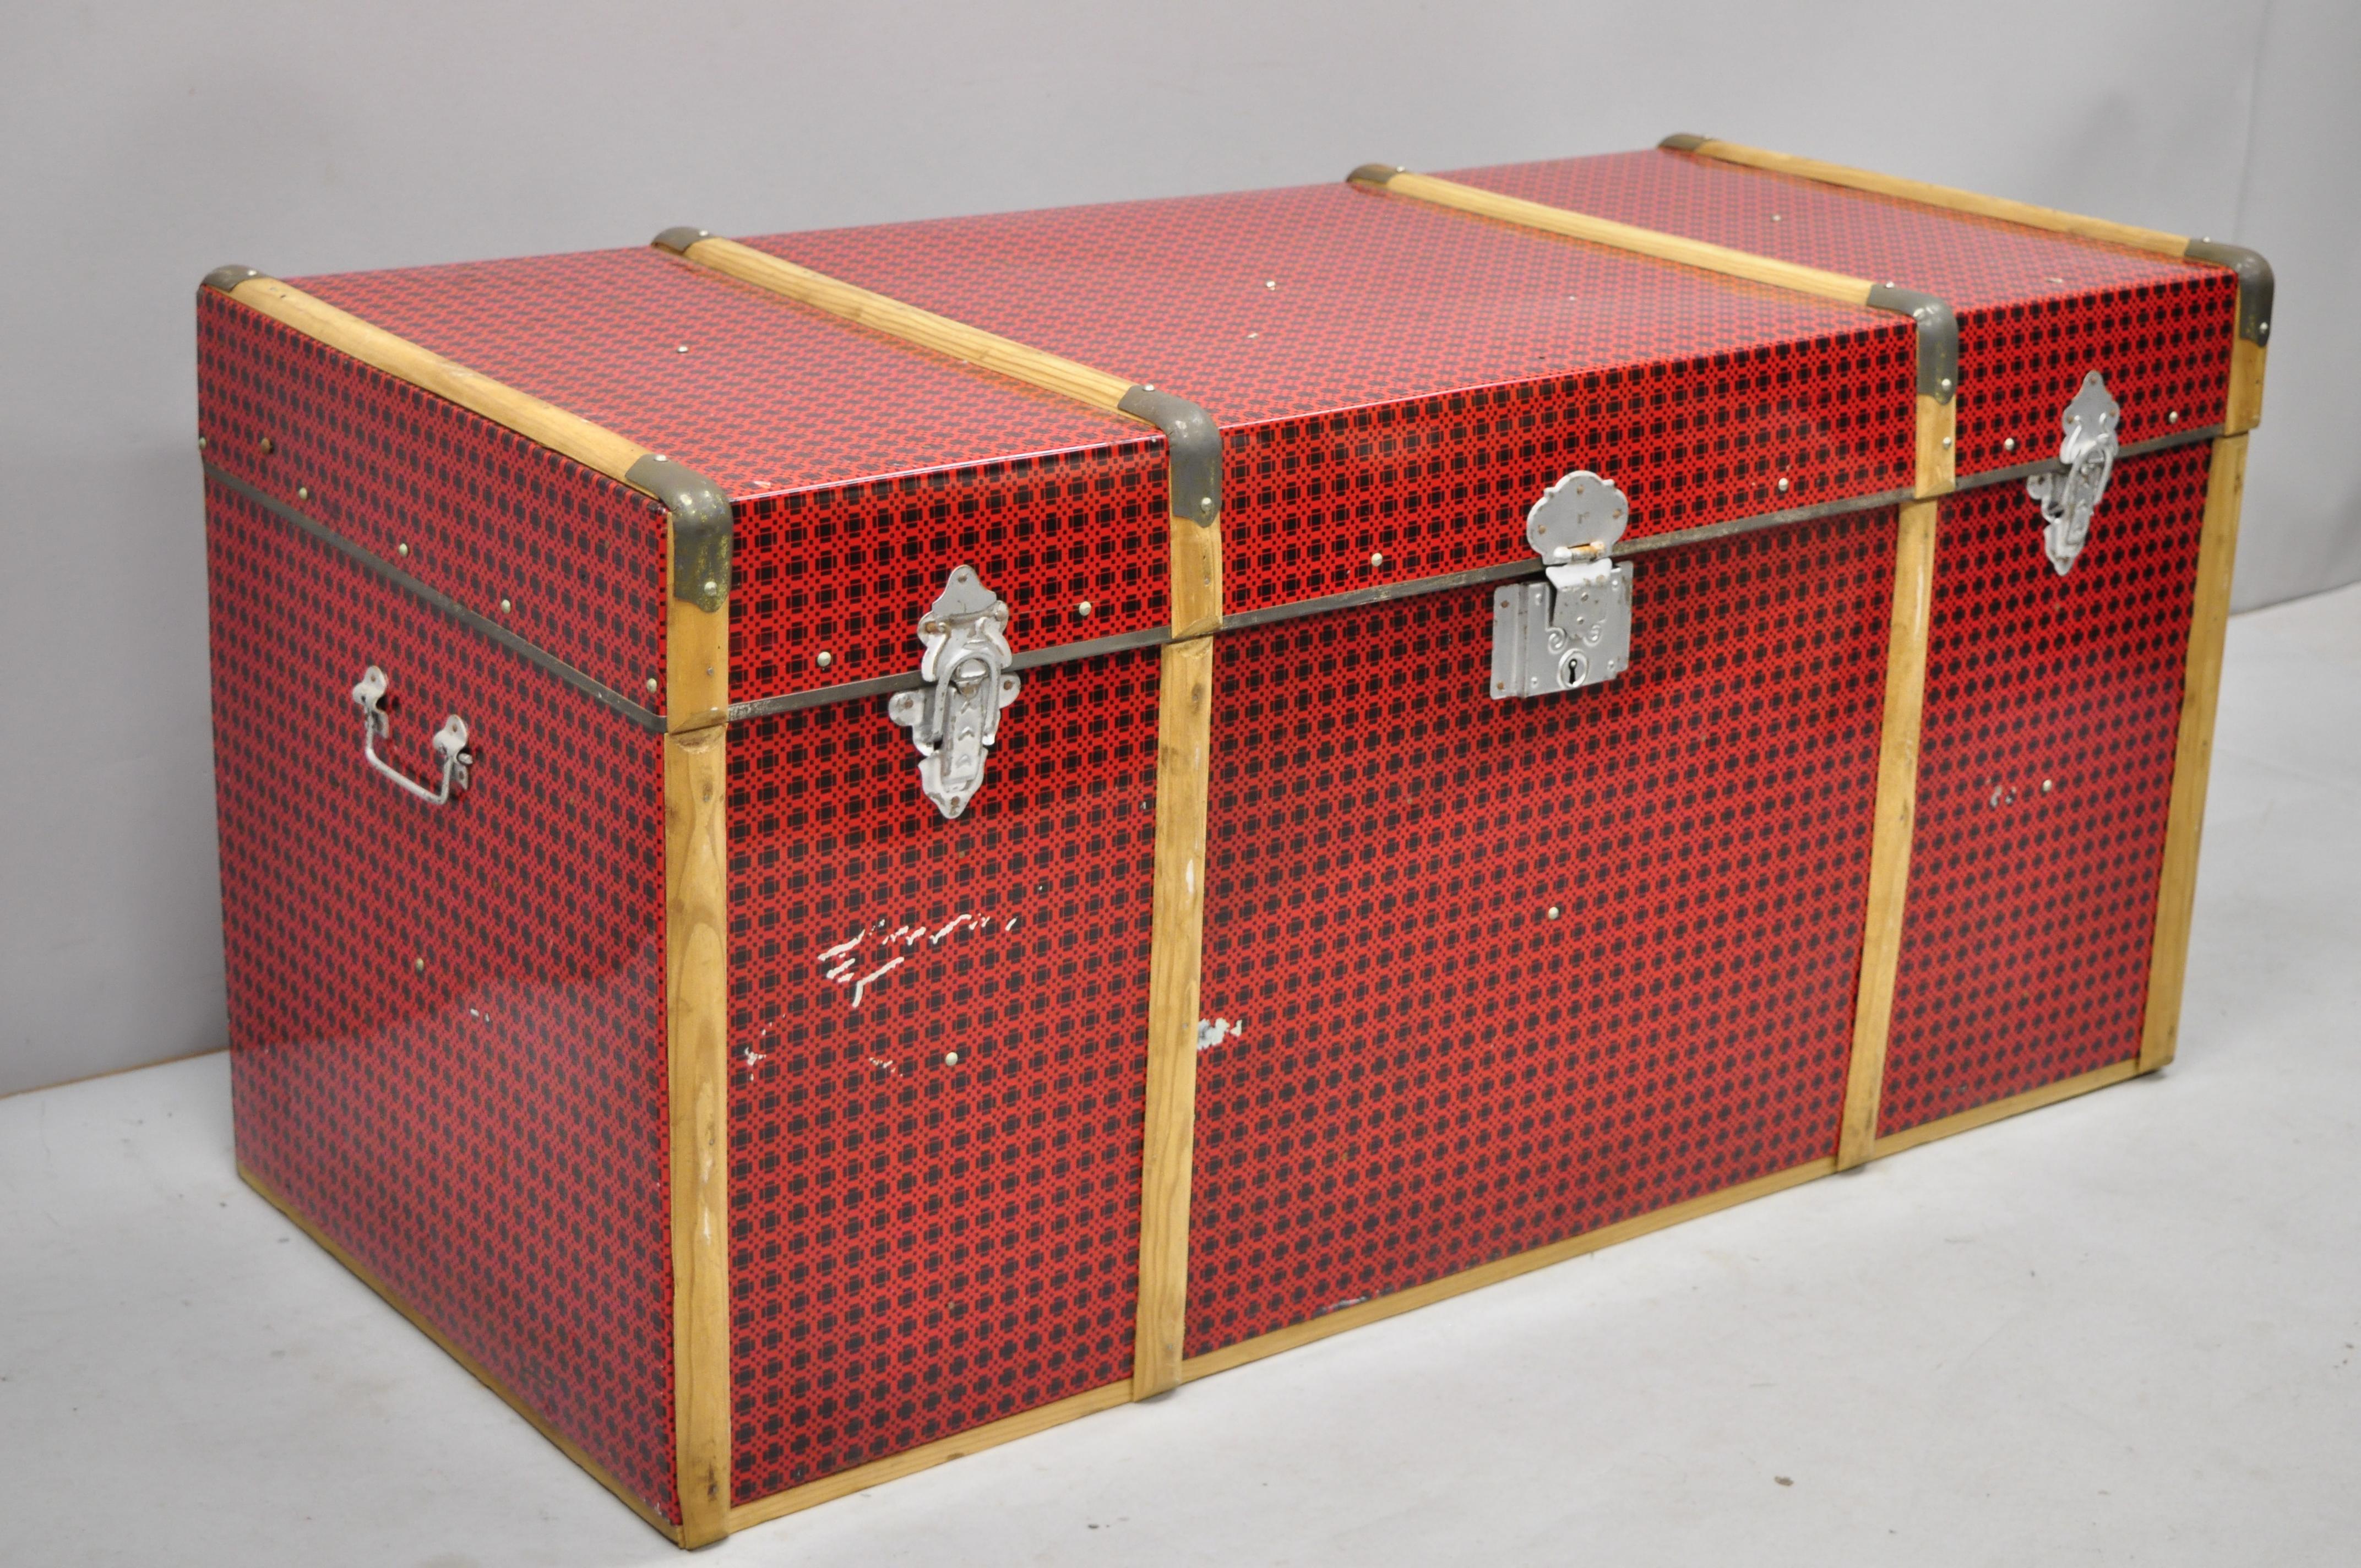 Vintage Holz Zinn Metall eingewickelt rot faux Cane Weide Brust Stamm Box. Artikel umfasst roten 